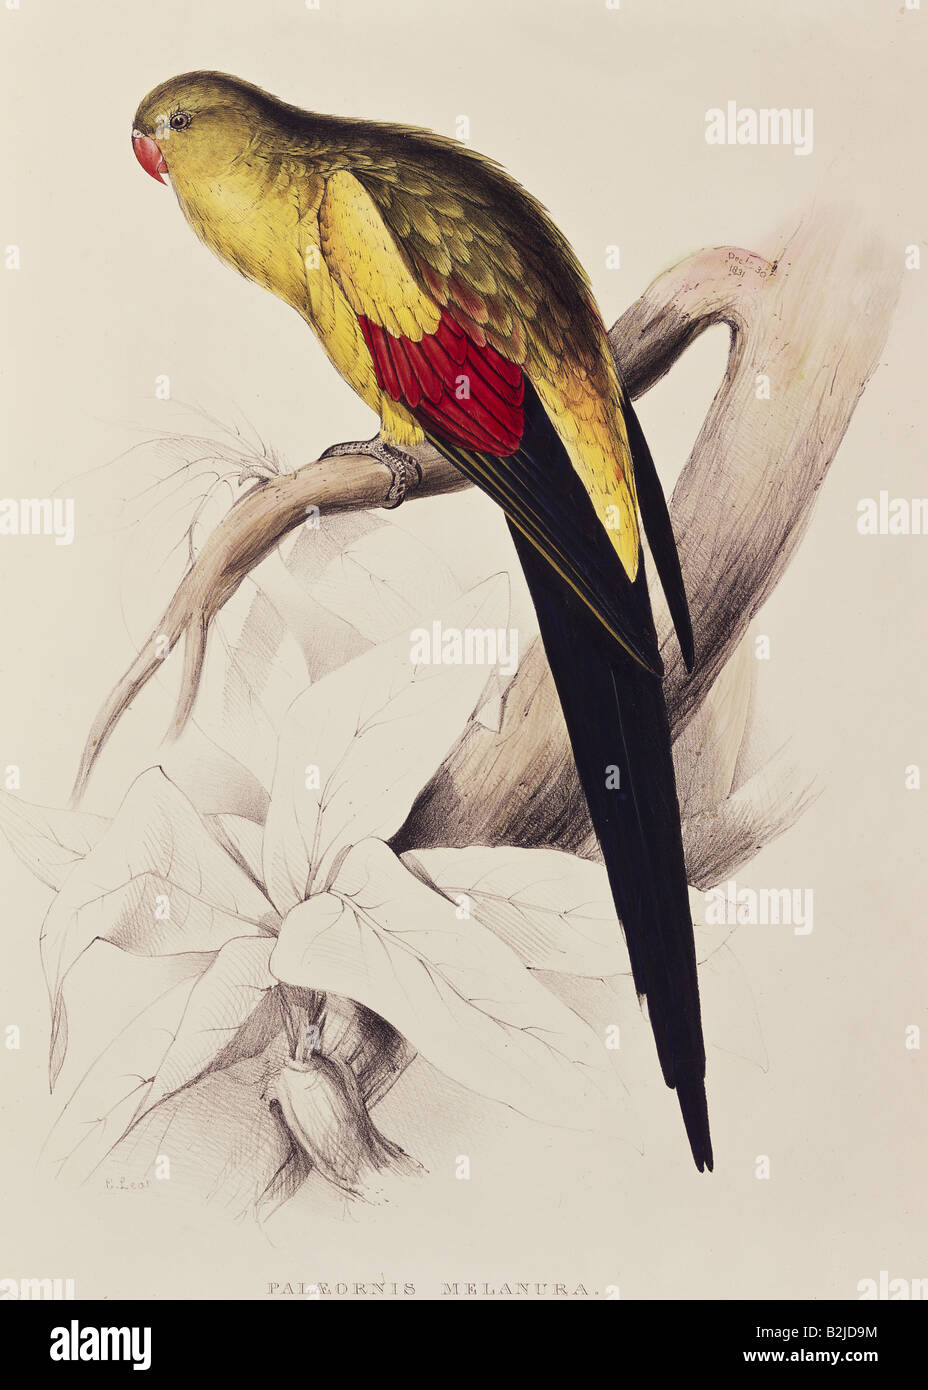 Zoologia, avian / bird, Psittacula, litografia di Edward Lear, "Illustrazioni della famiglia dei Psittacidae", Londra, 1831 - 1833, collezione privata, , Foto Stock